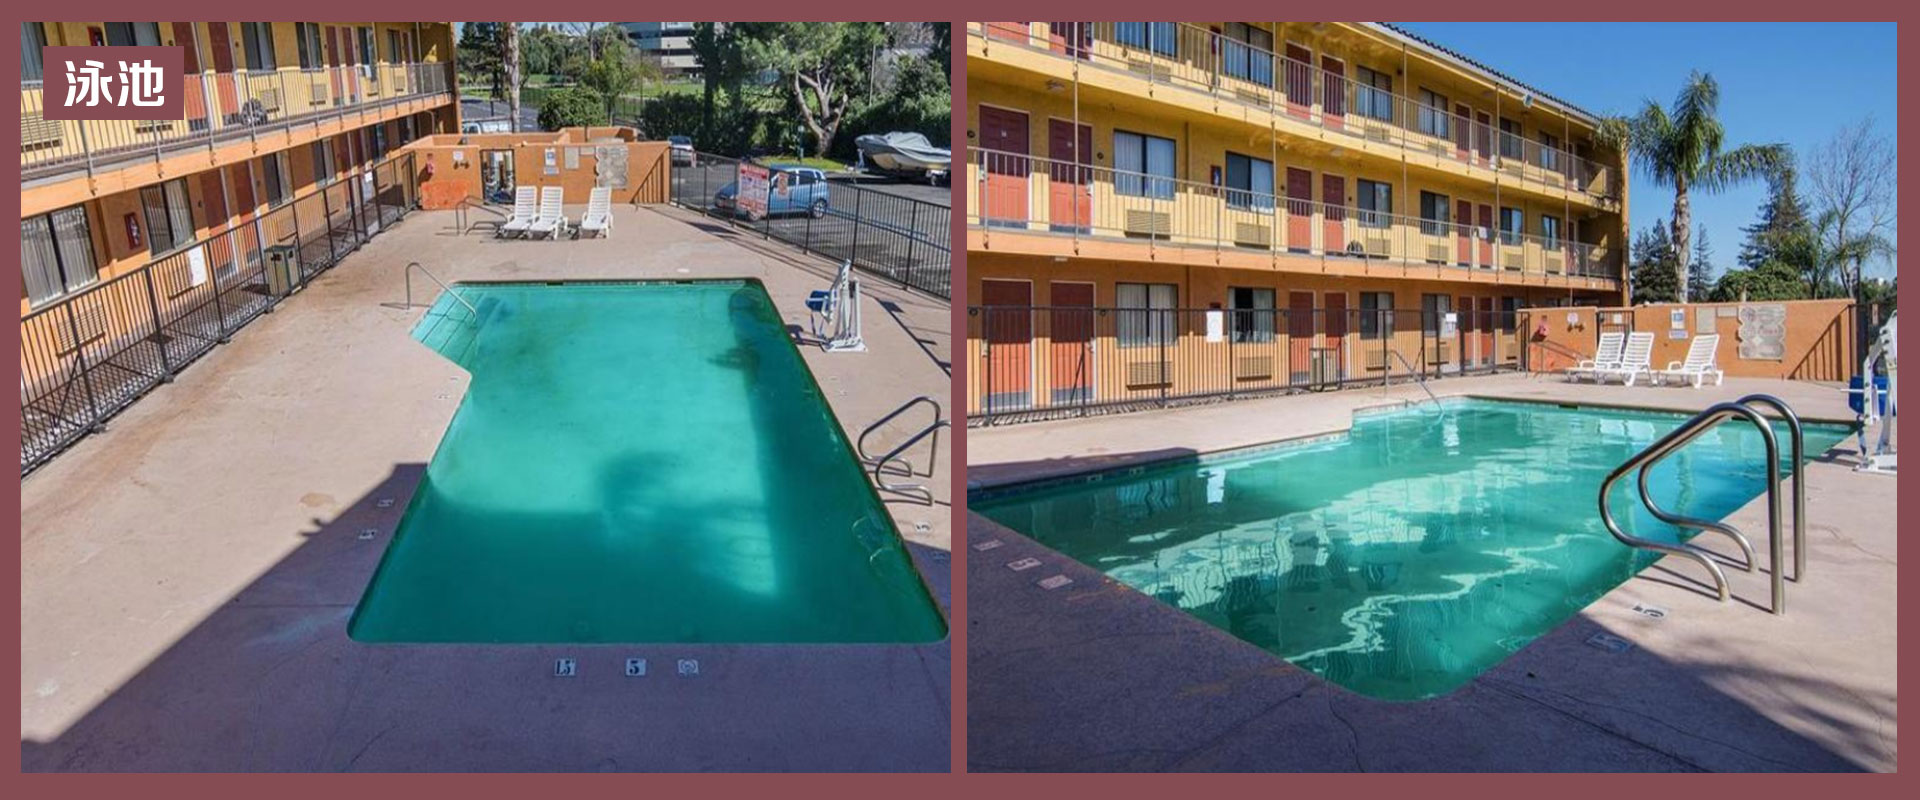 北加州，斯达克顿，知名连锁旅馆出售 Motel 6 泳池